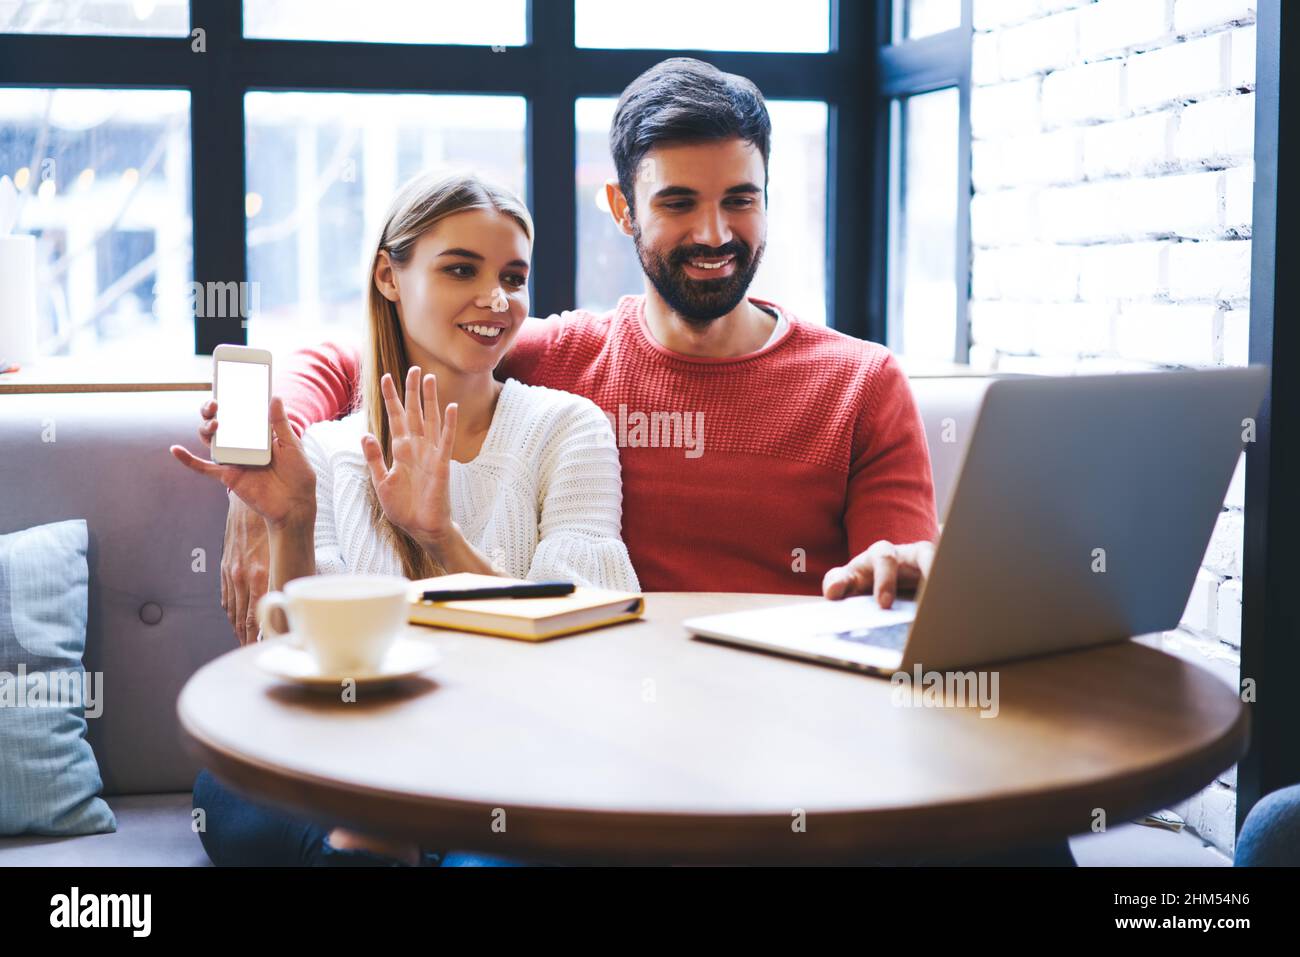 Homme souriant et femme regardant la vidéo sur ordinateur portable dans la cafétéria confortable Banque D'Images